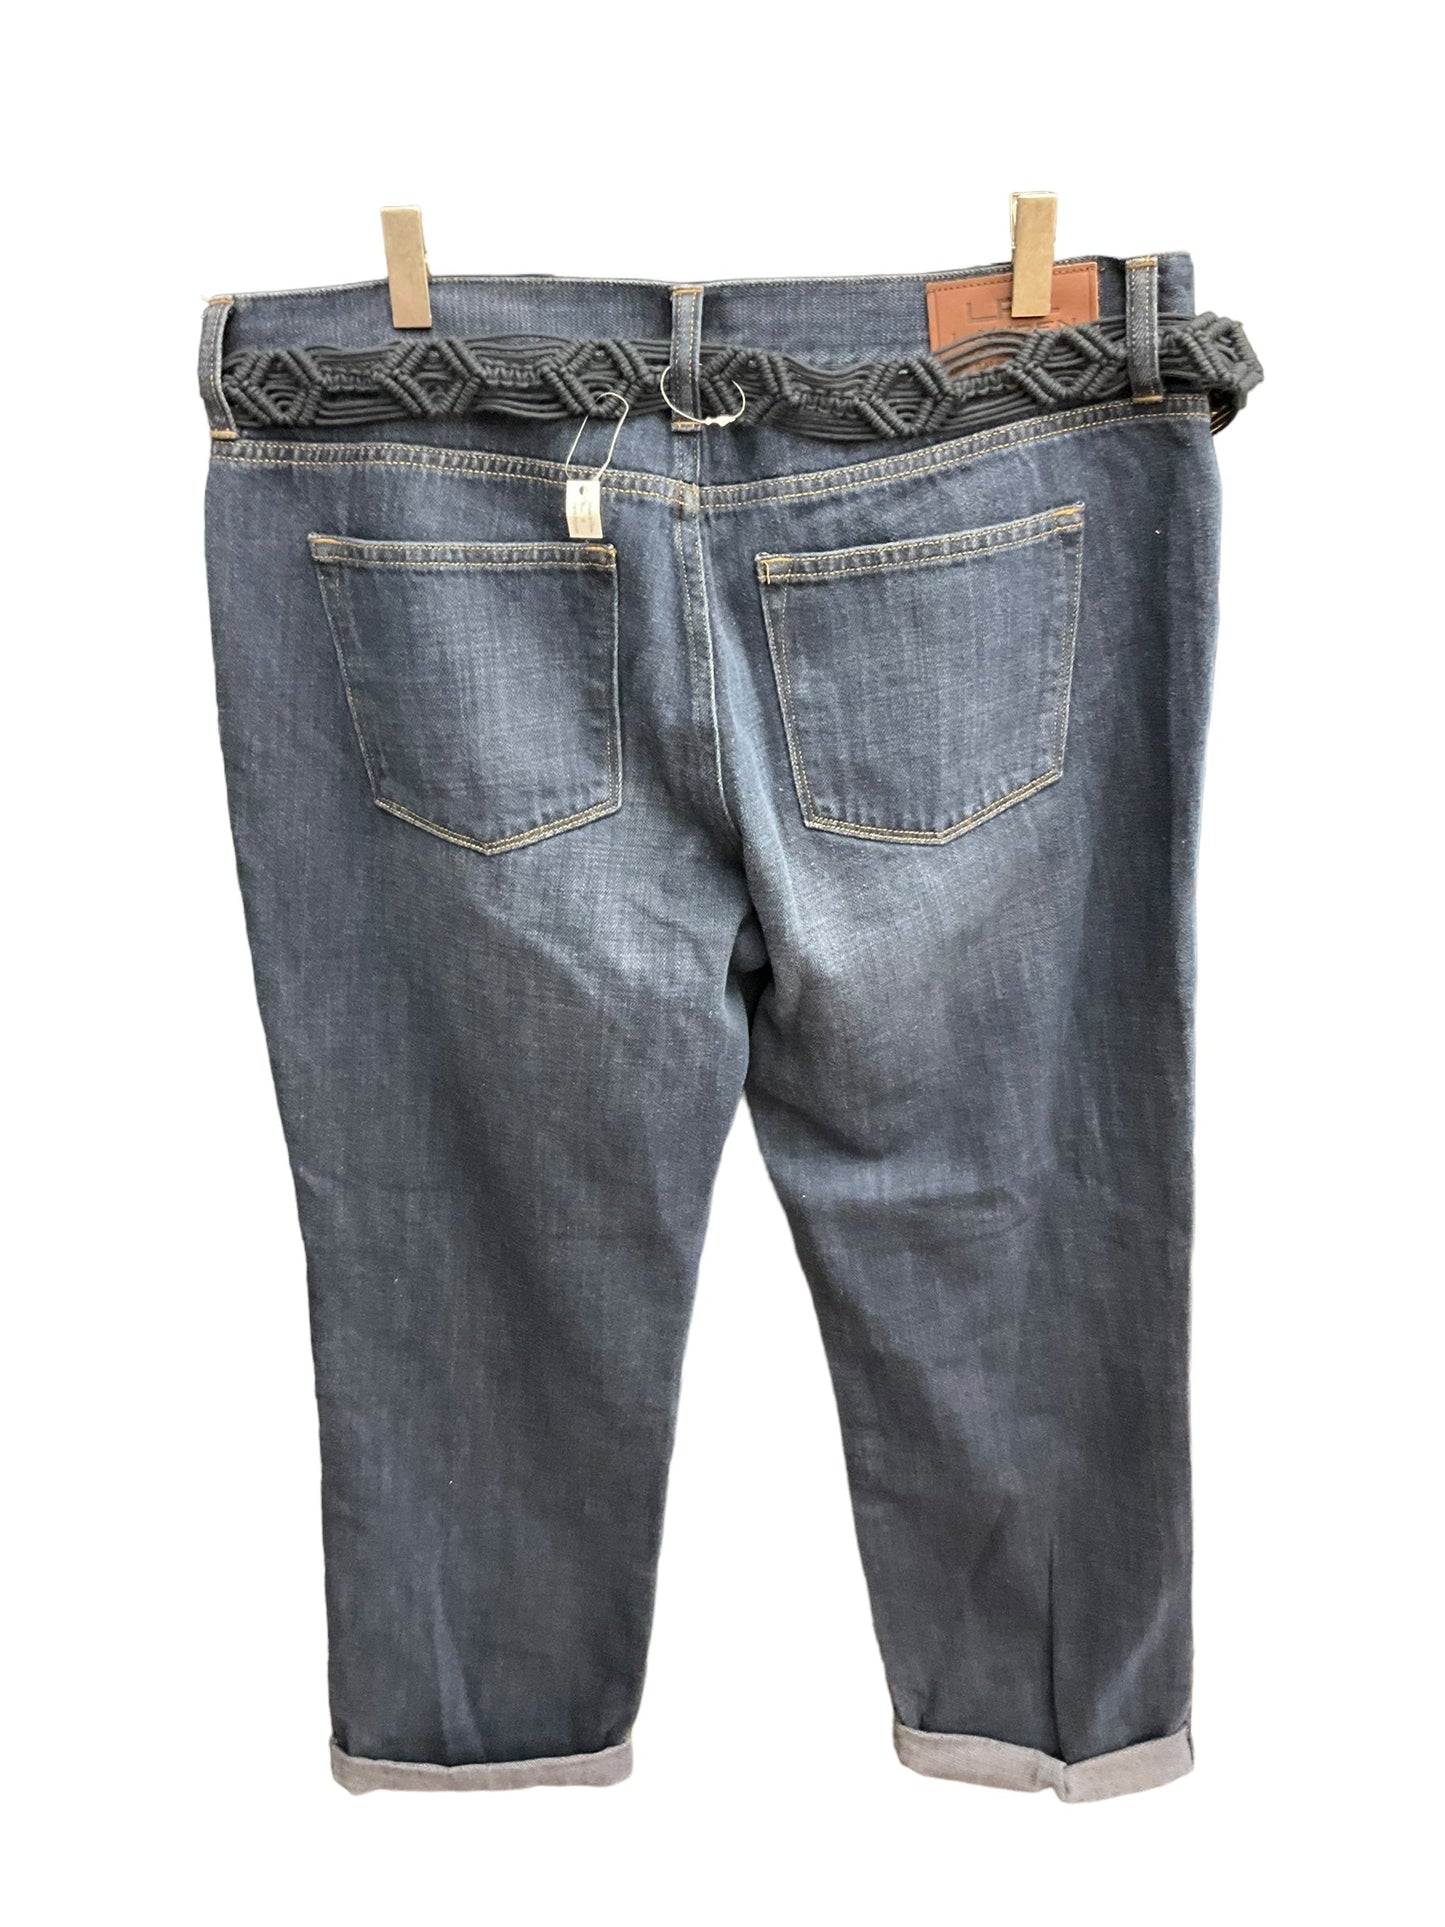 Blue Denim Jeans Cropped Ralph Lauren, Size 10